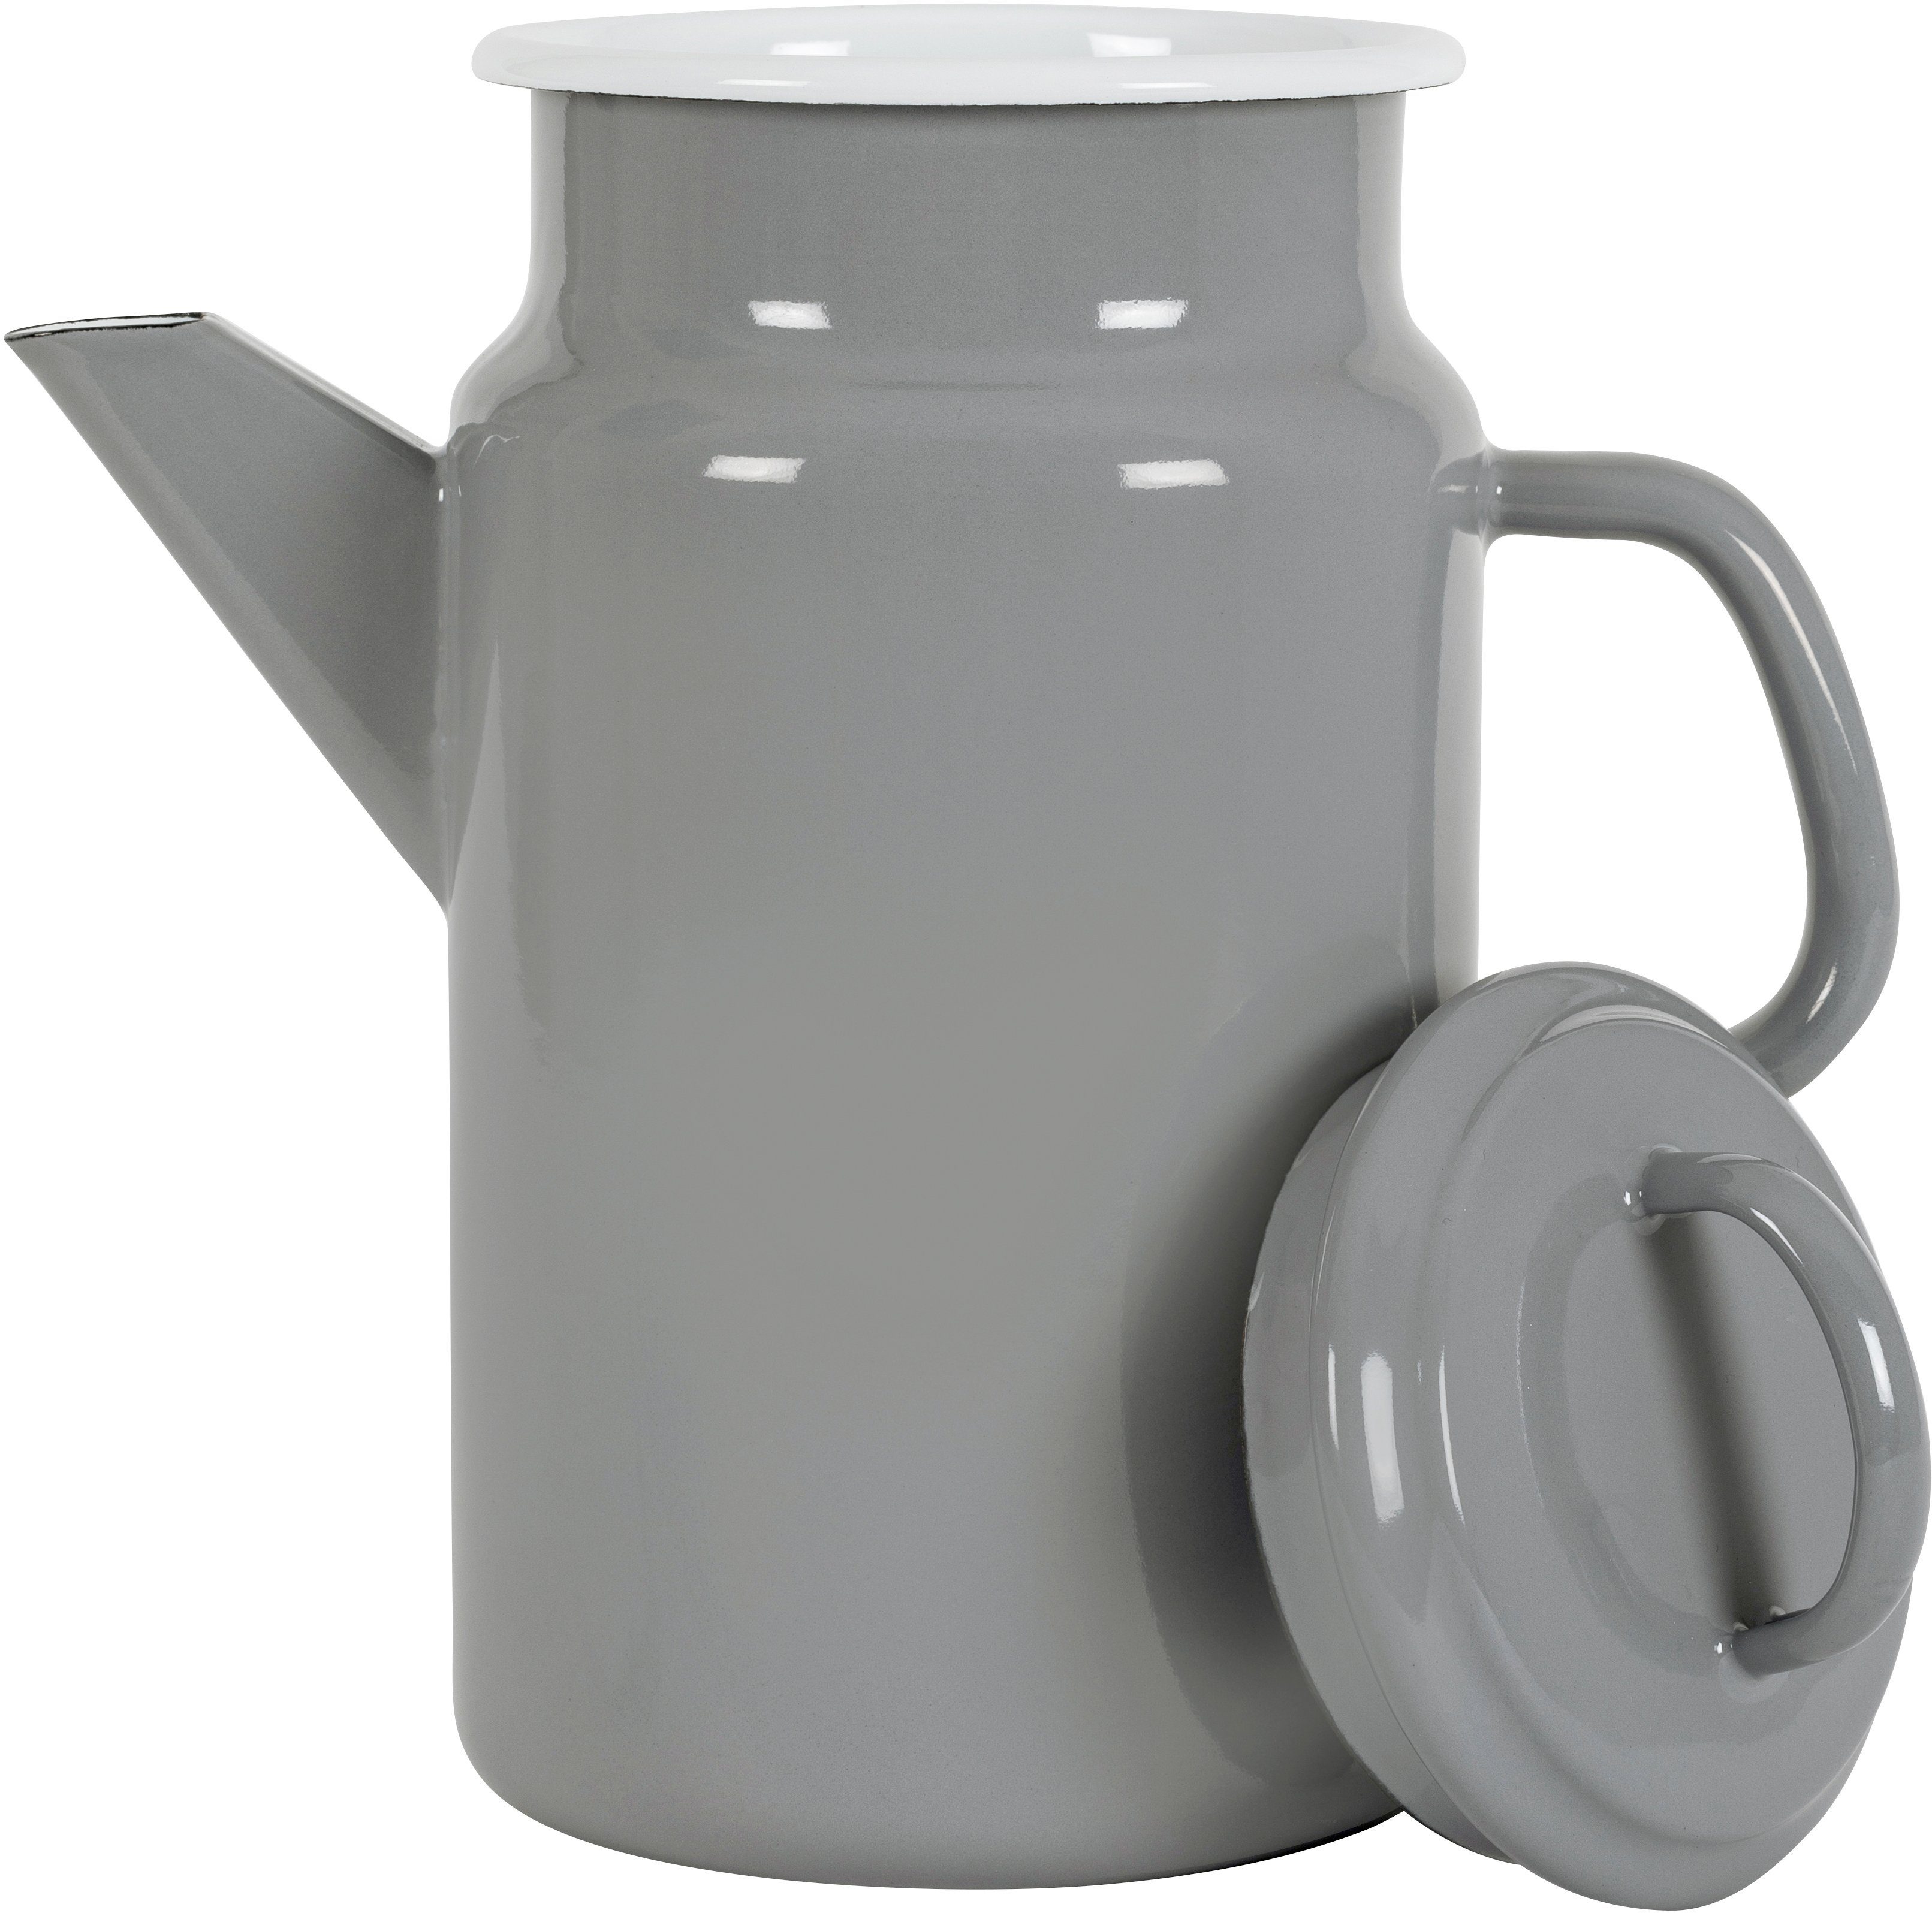 KOCKUMS® Jernverk, Retro-Design vereint Teekanne Teekanne und l, Emaille, grau einer 2 Nachhaltigkeit in